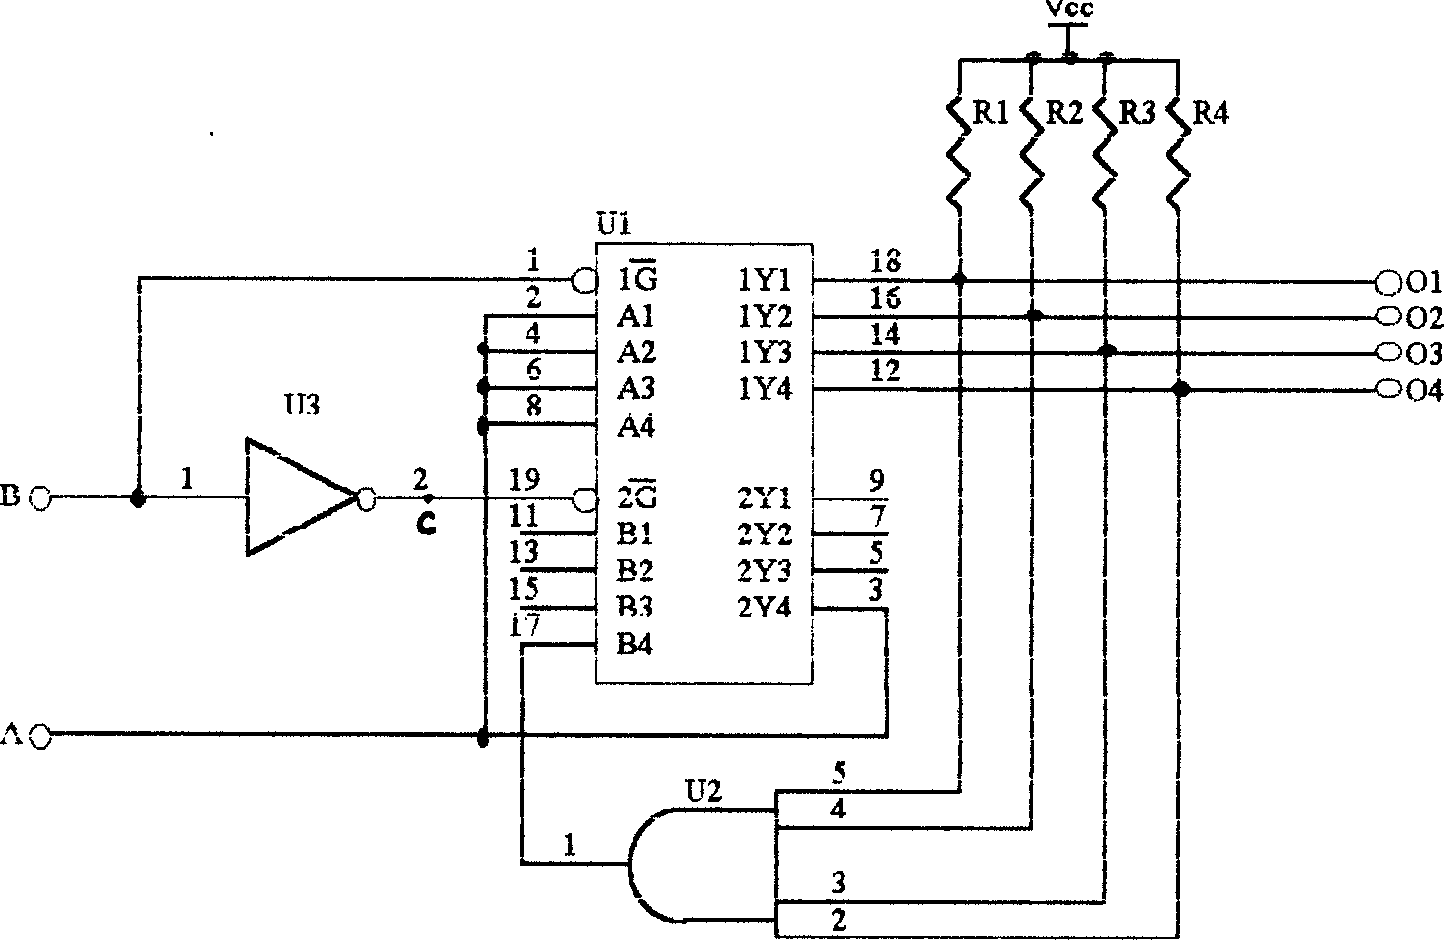 Dirve circuit of monobus